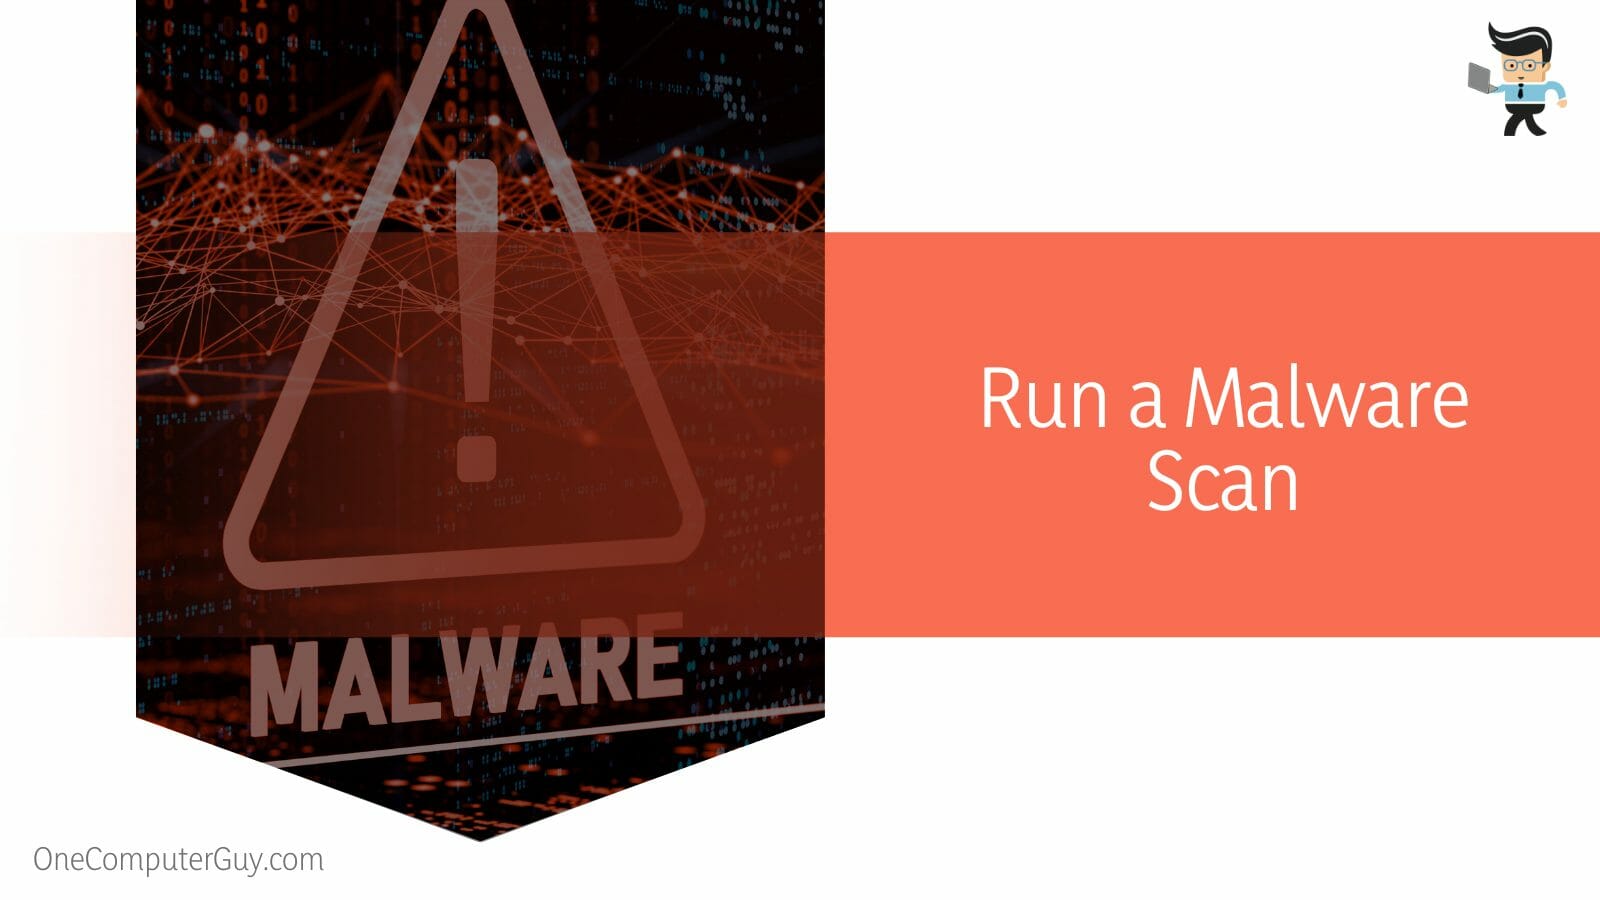 Run a Malware Scan